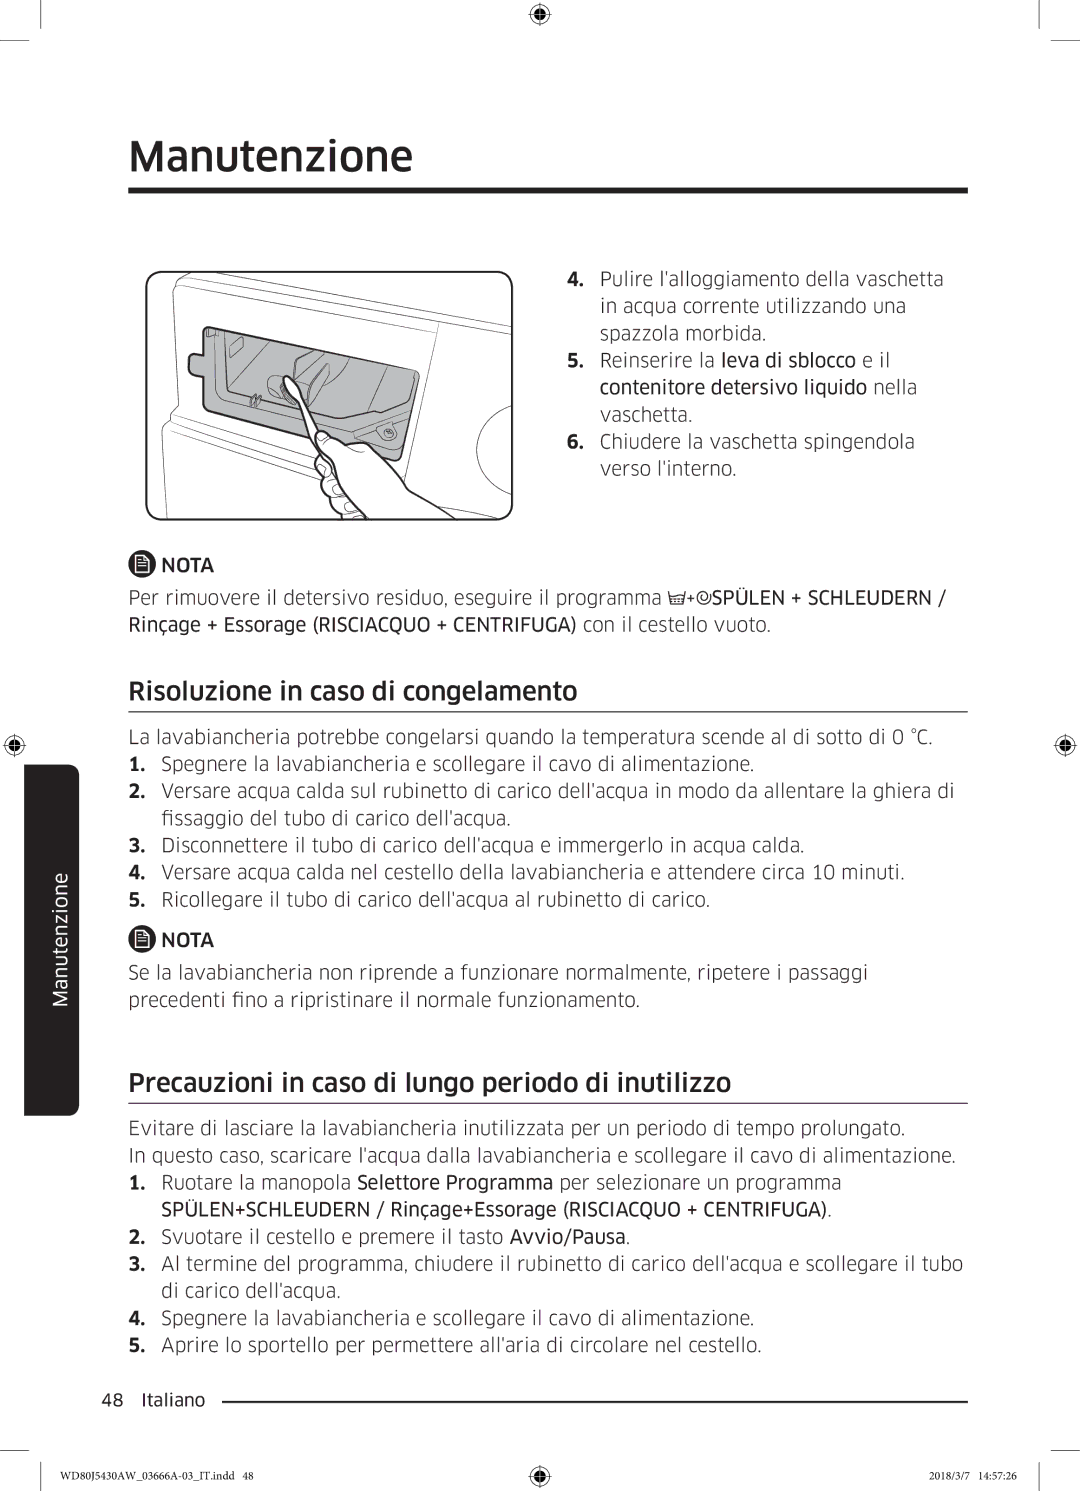 Samsung WD80J5430AW/WS manual Risoluzione in caso di congelamento, Precauzioni in caso di lungo periodo di inutilizzo 